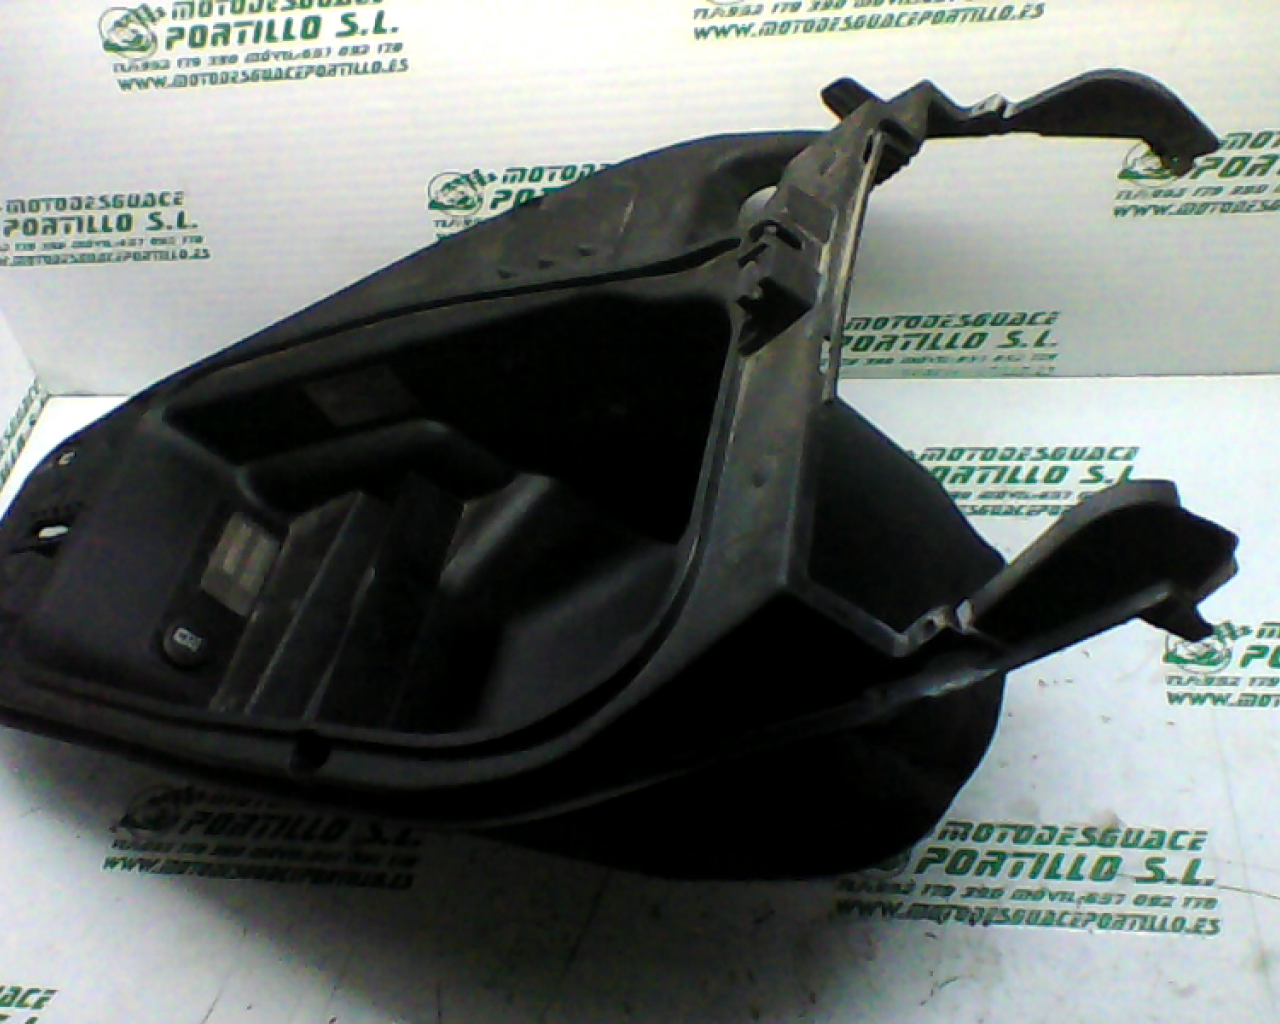 Porta-casco Gilera NEXUS 500  04 (2004-2005)